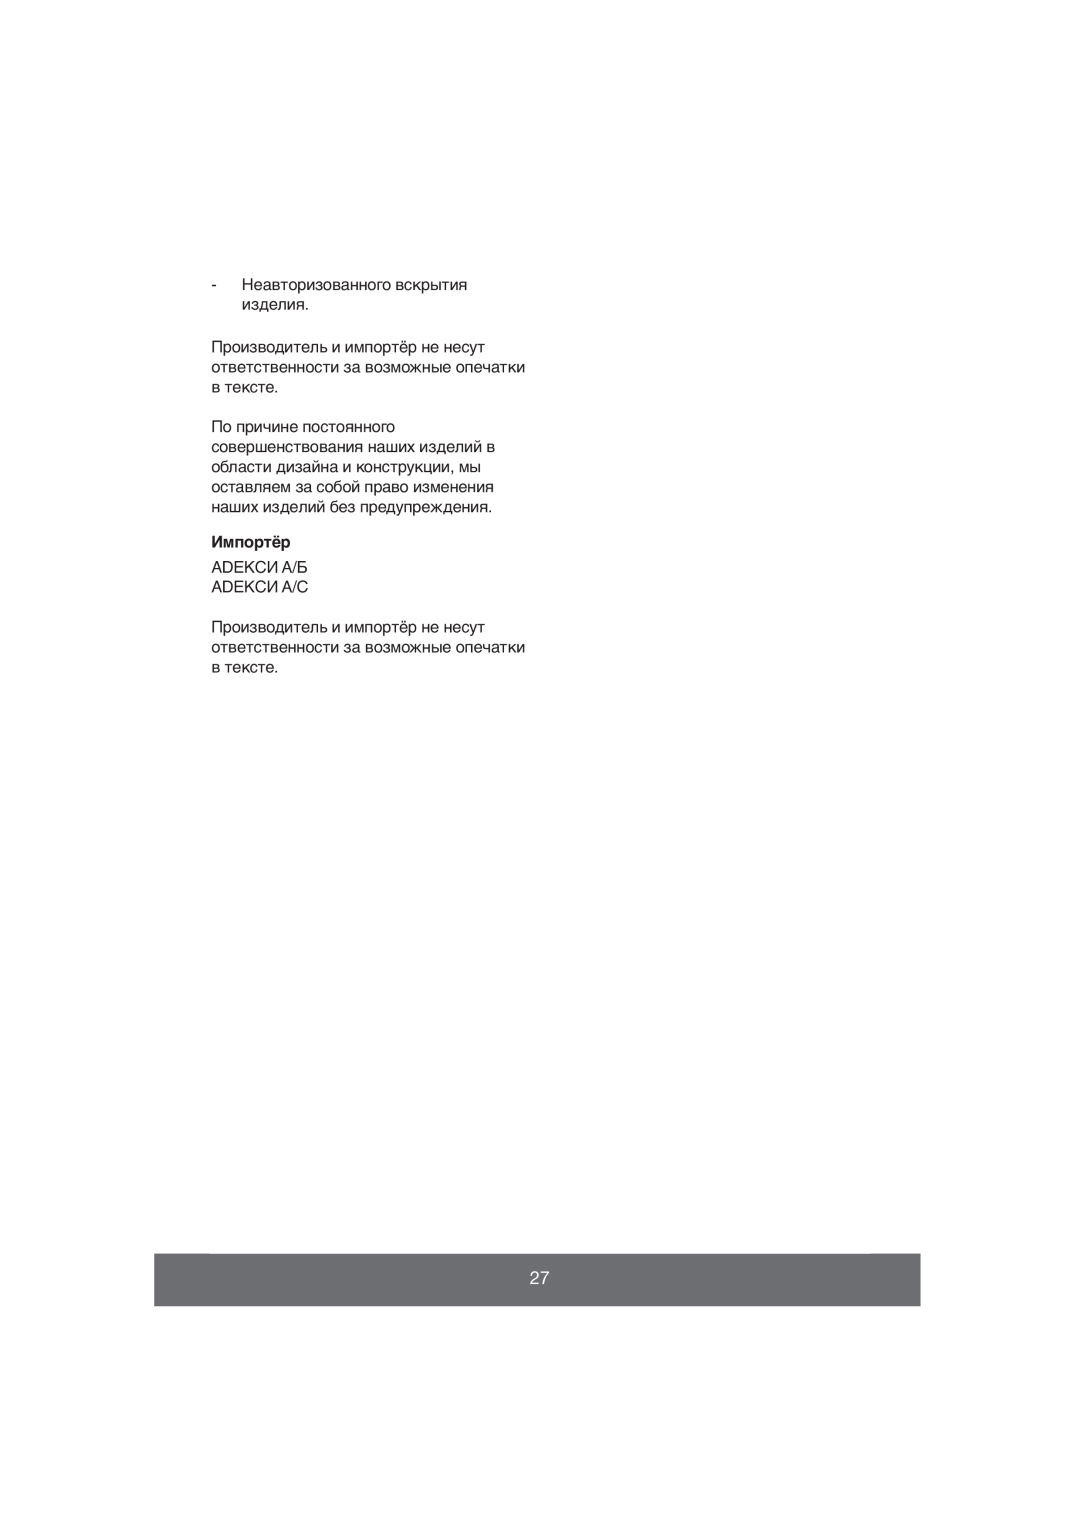 Melissa 640-019, 640-037 manual Импортёр, Неавторизованного вскрытия изделия, Adekси А/Б Adekси А/С 